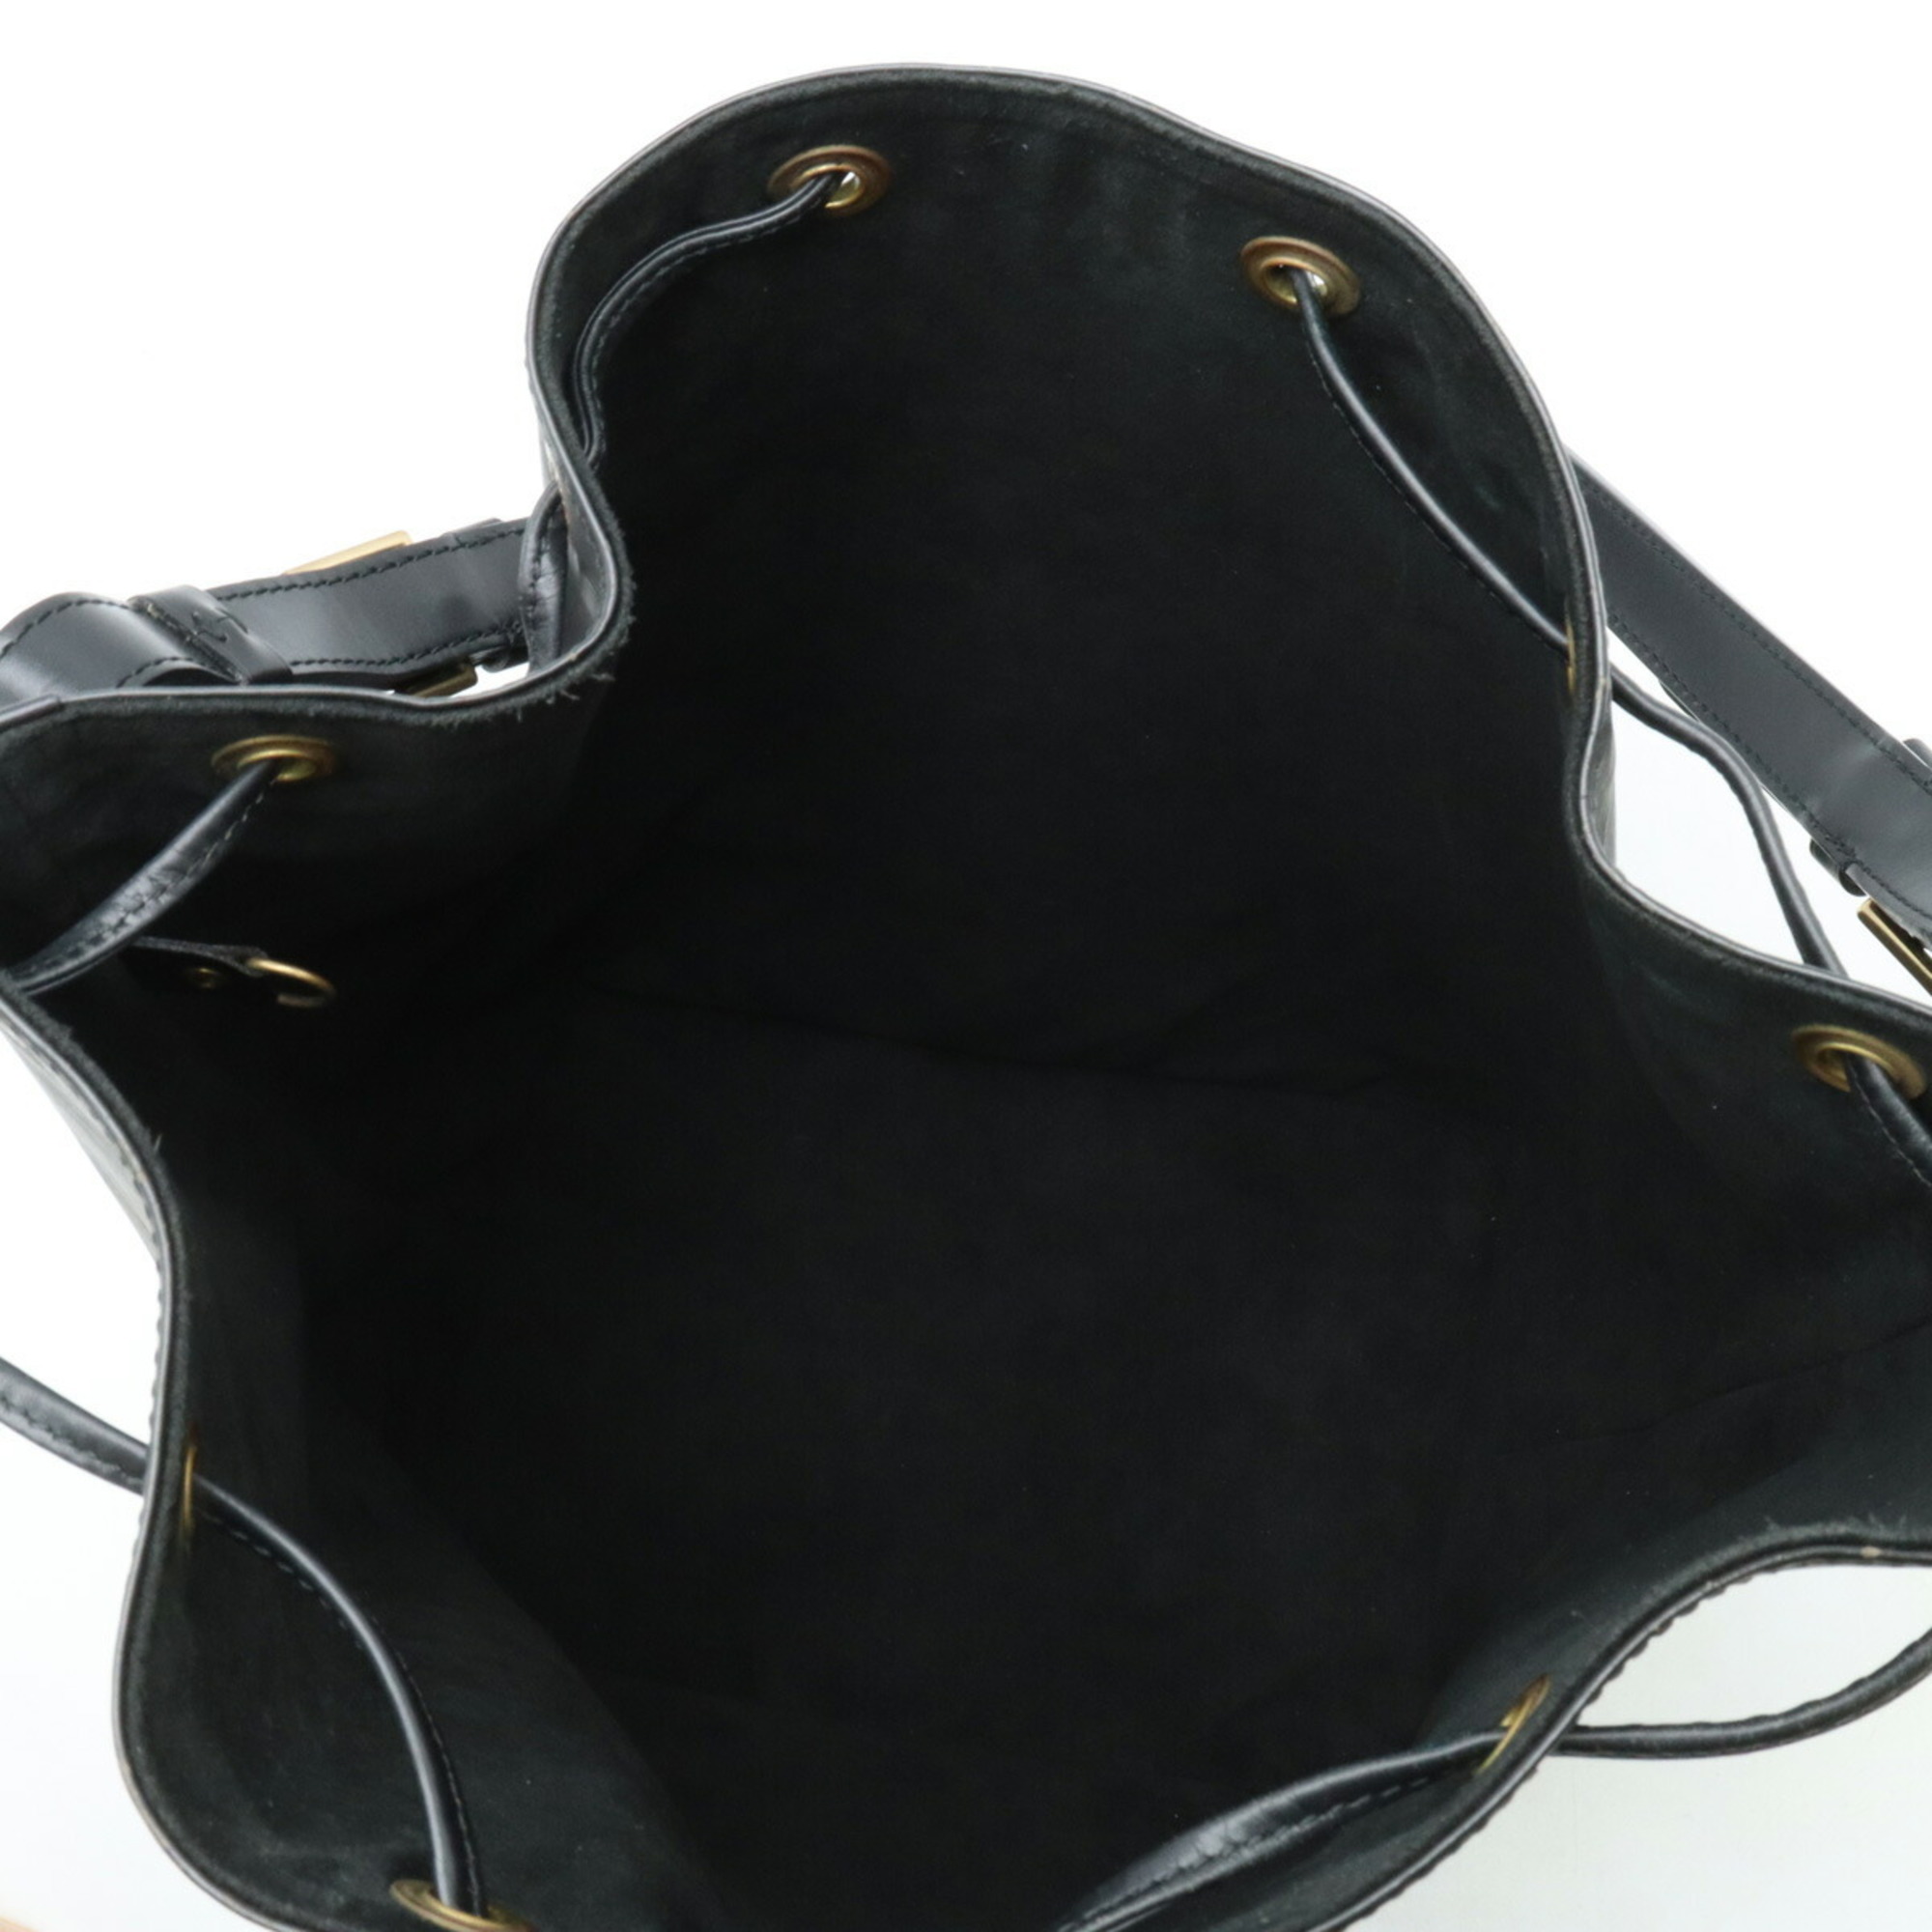 LOUIS VUITTON Epi Noe Shoulder Bag Noir Black M59002